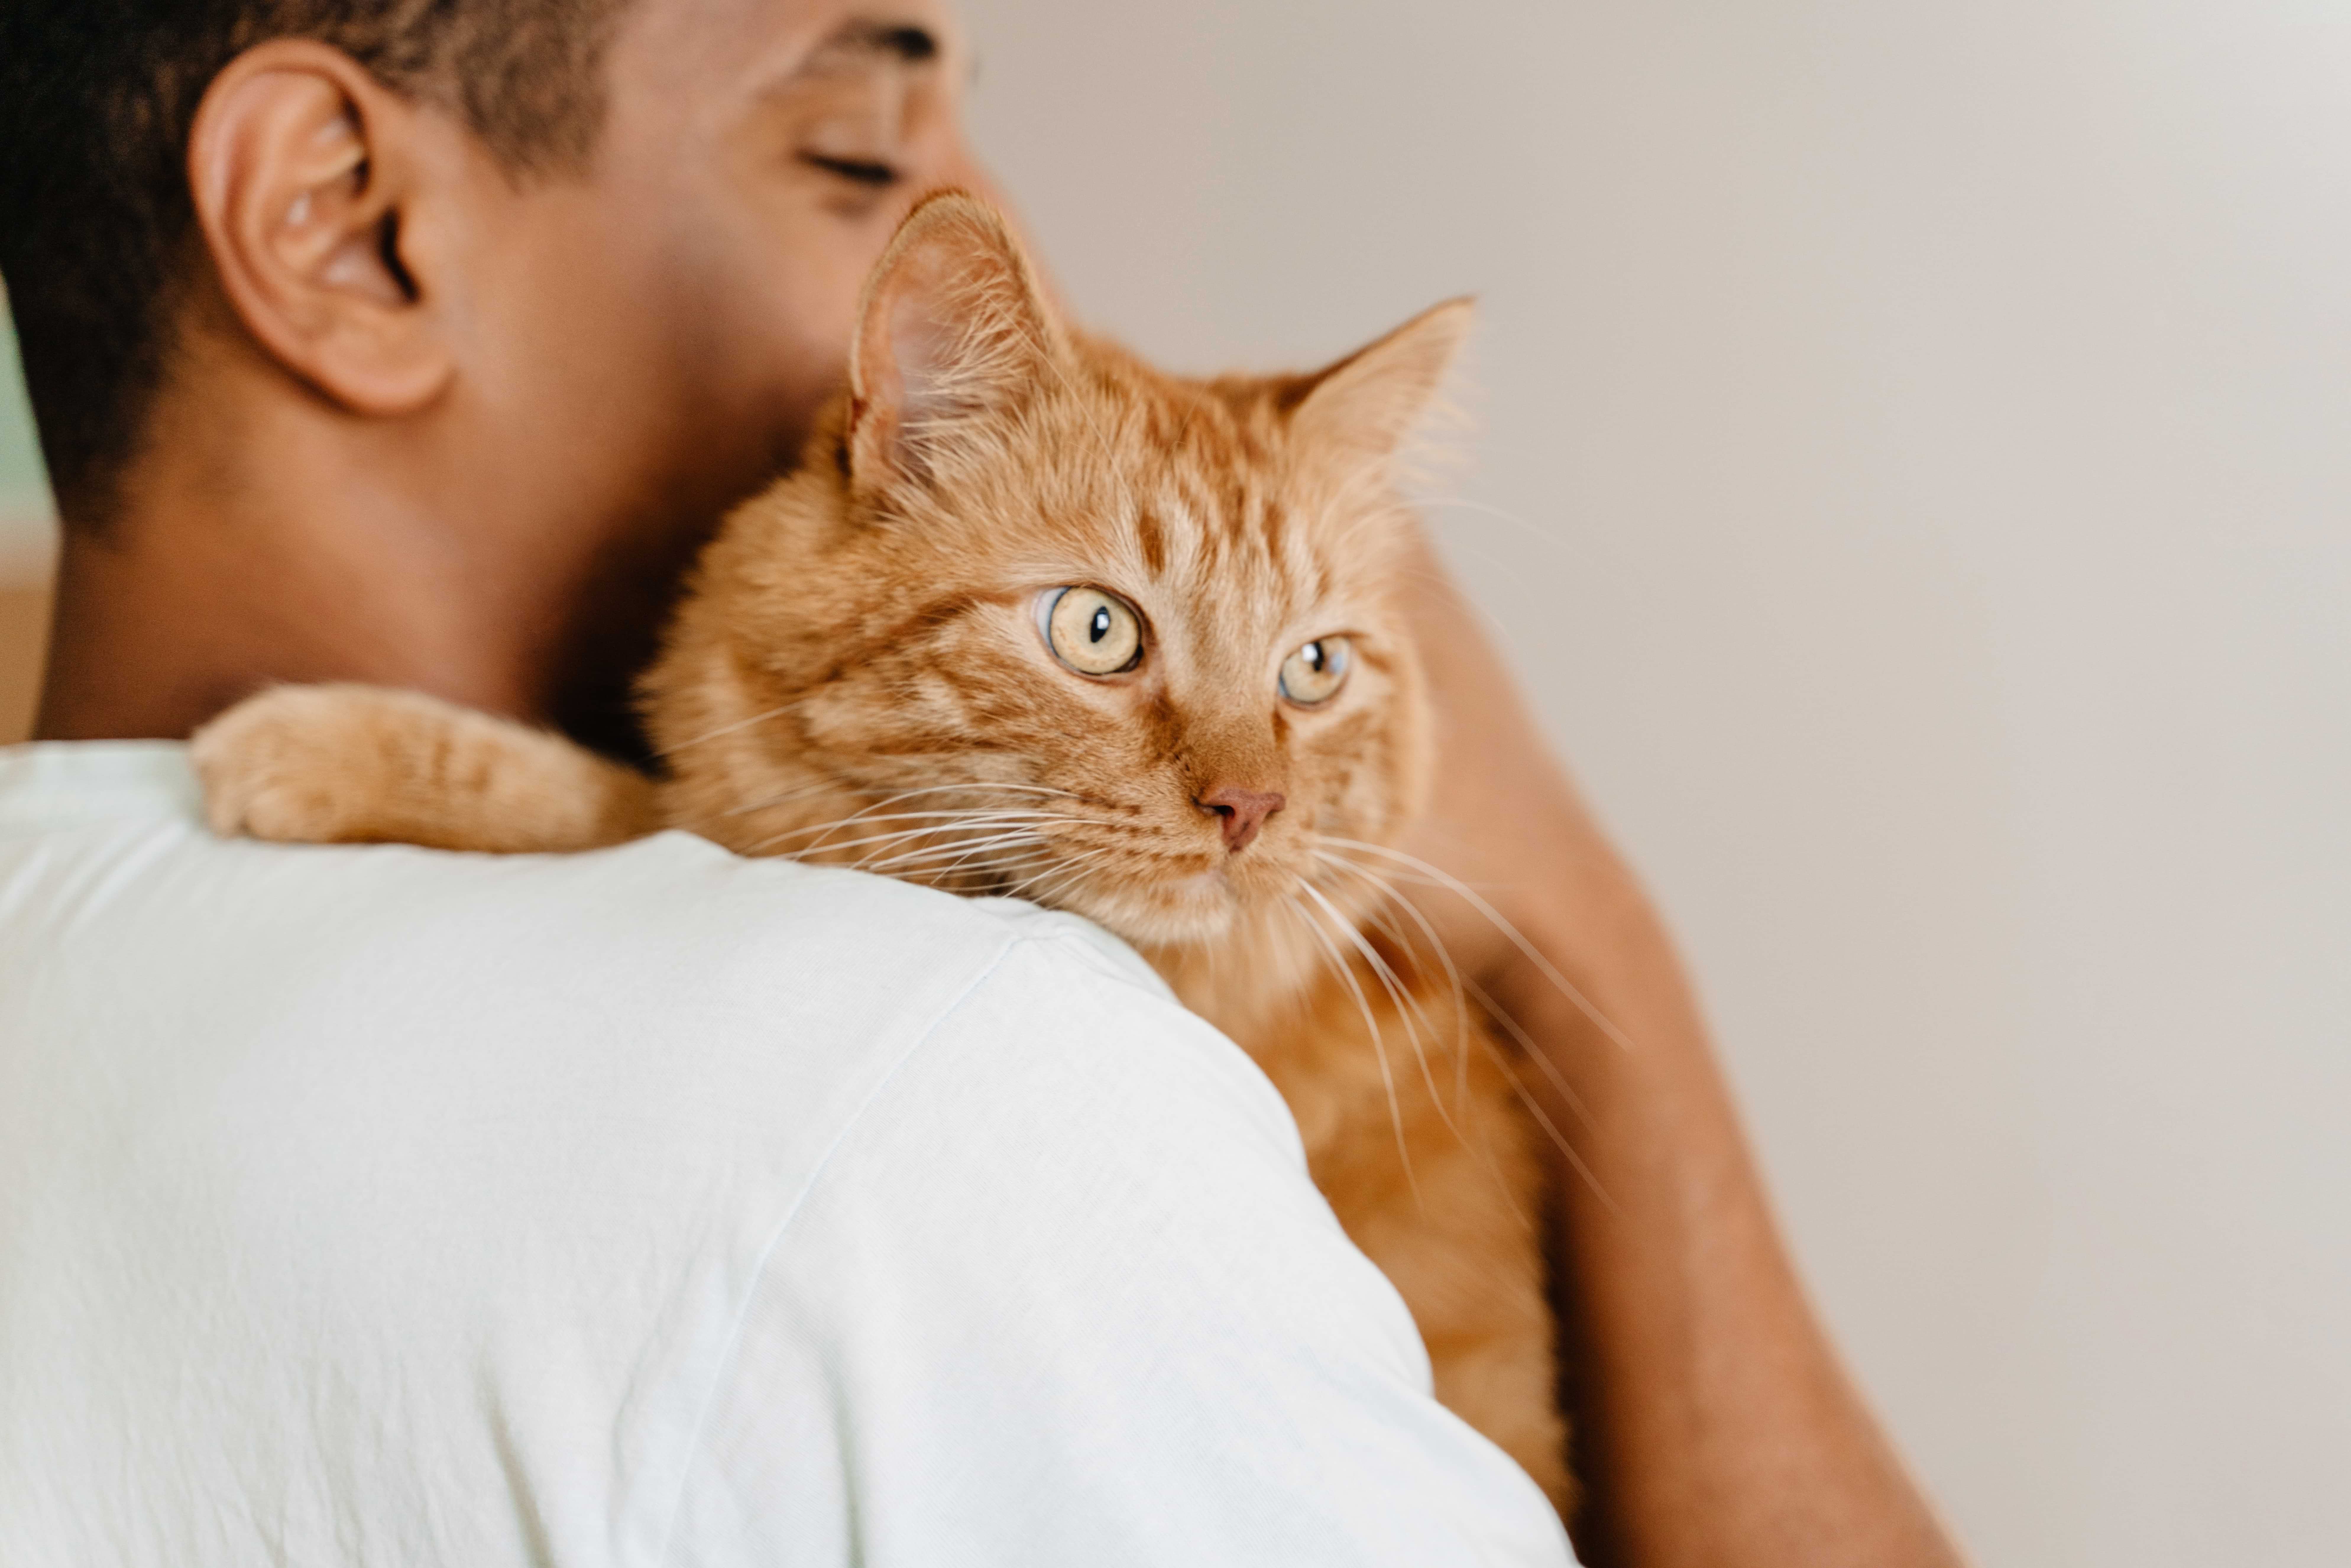 man in white shirt hugging orange cat